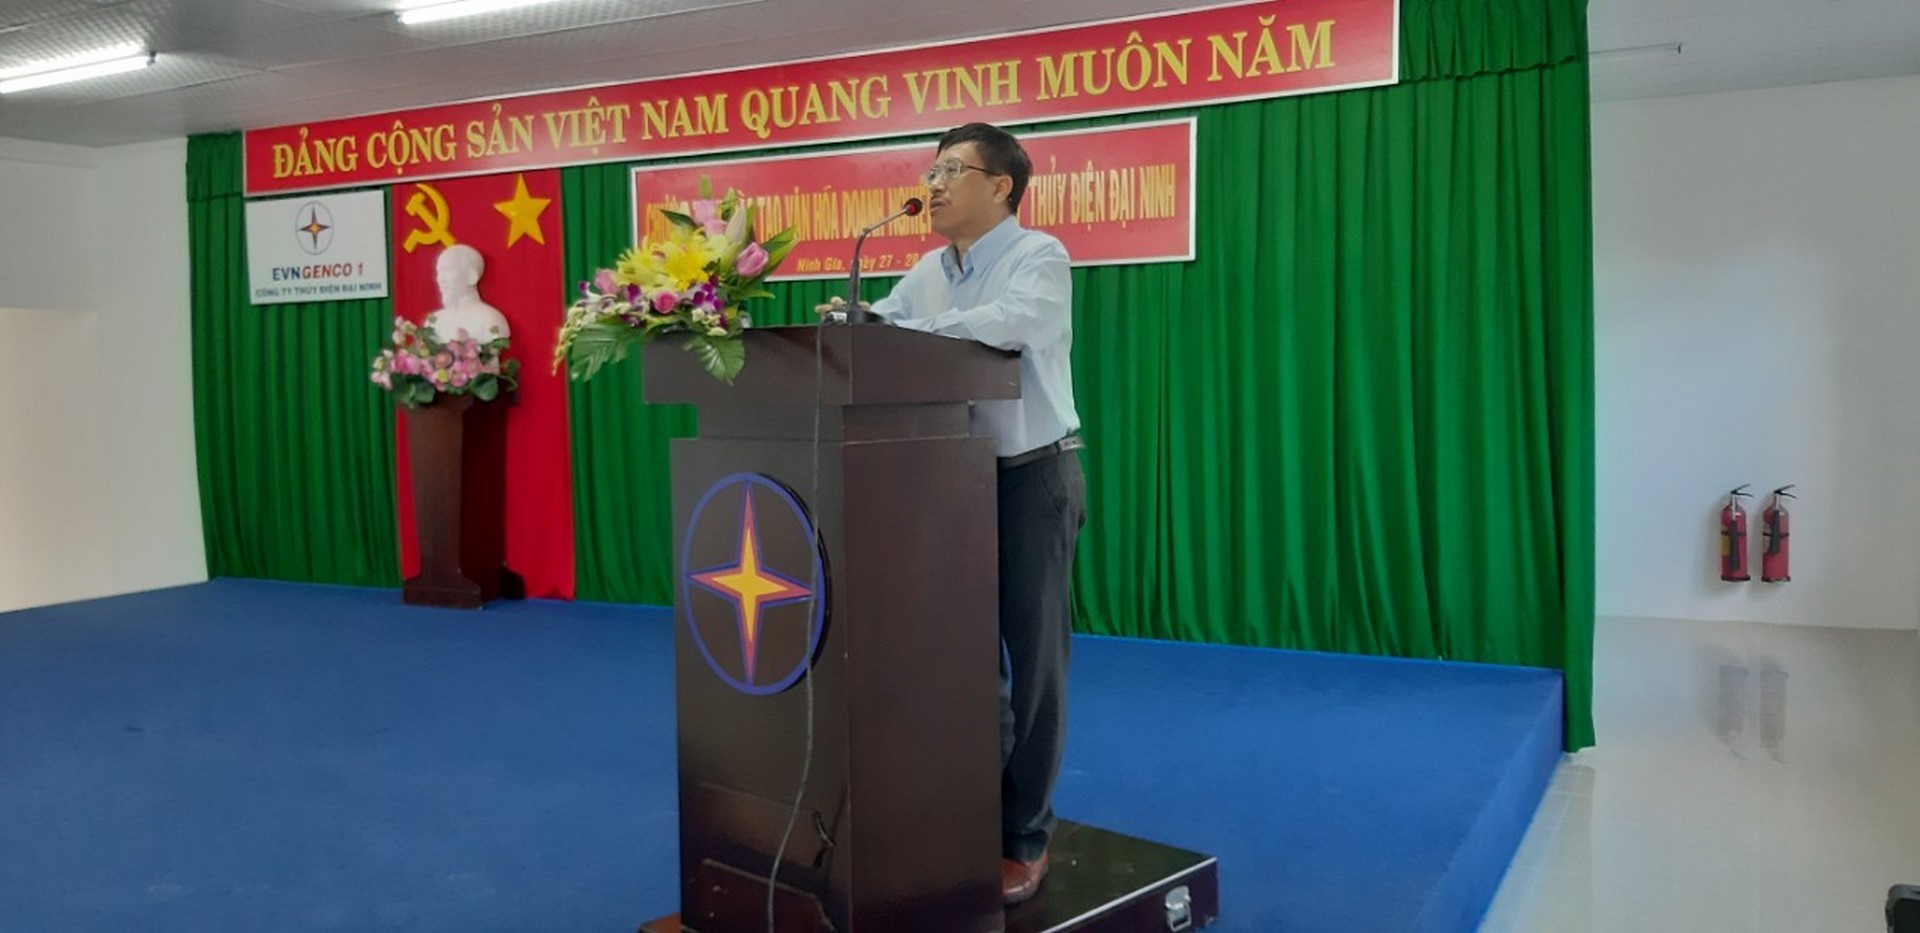 Công ty Thủy điện Đại Ninh tổ chức thành công chương trình đào tạo VHDN đợt 2 năm 2019